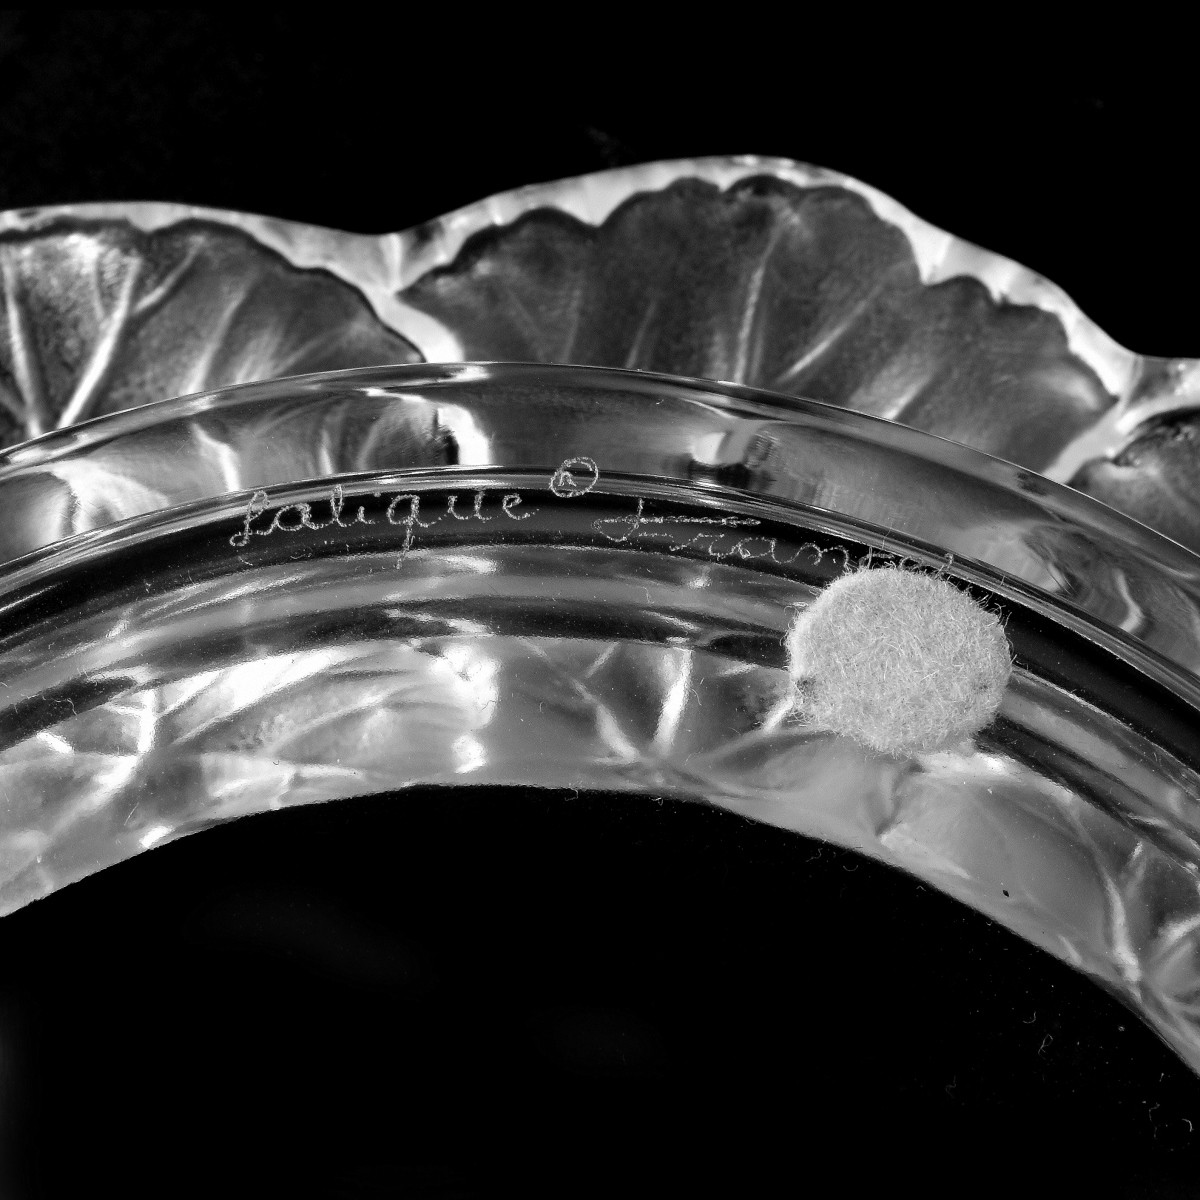 Lalique Honfleur Bowl